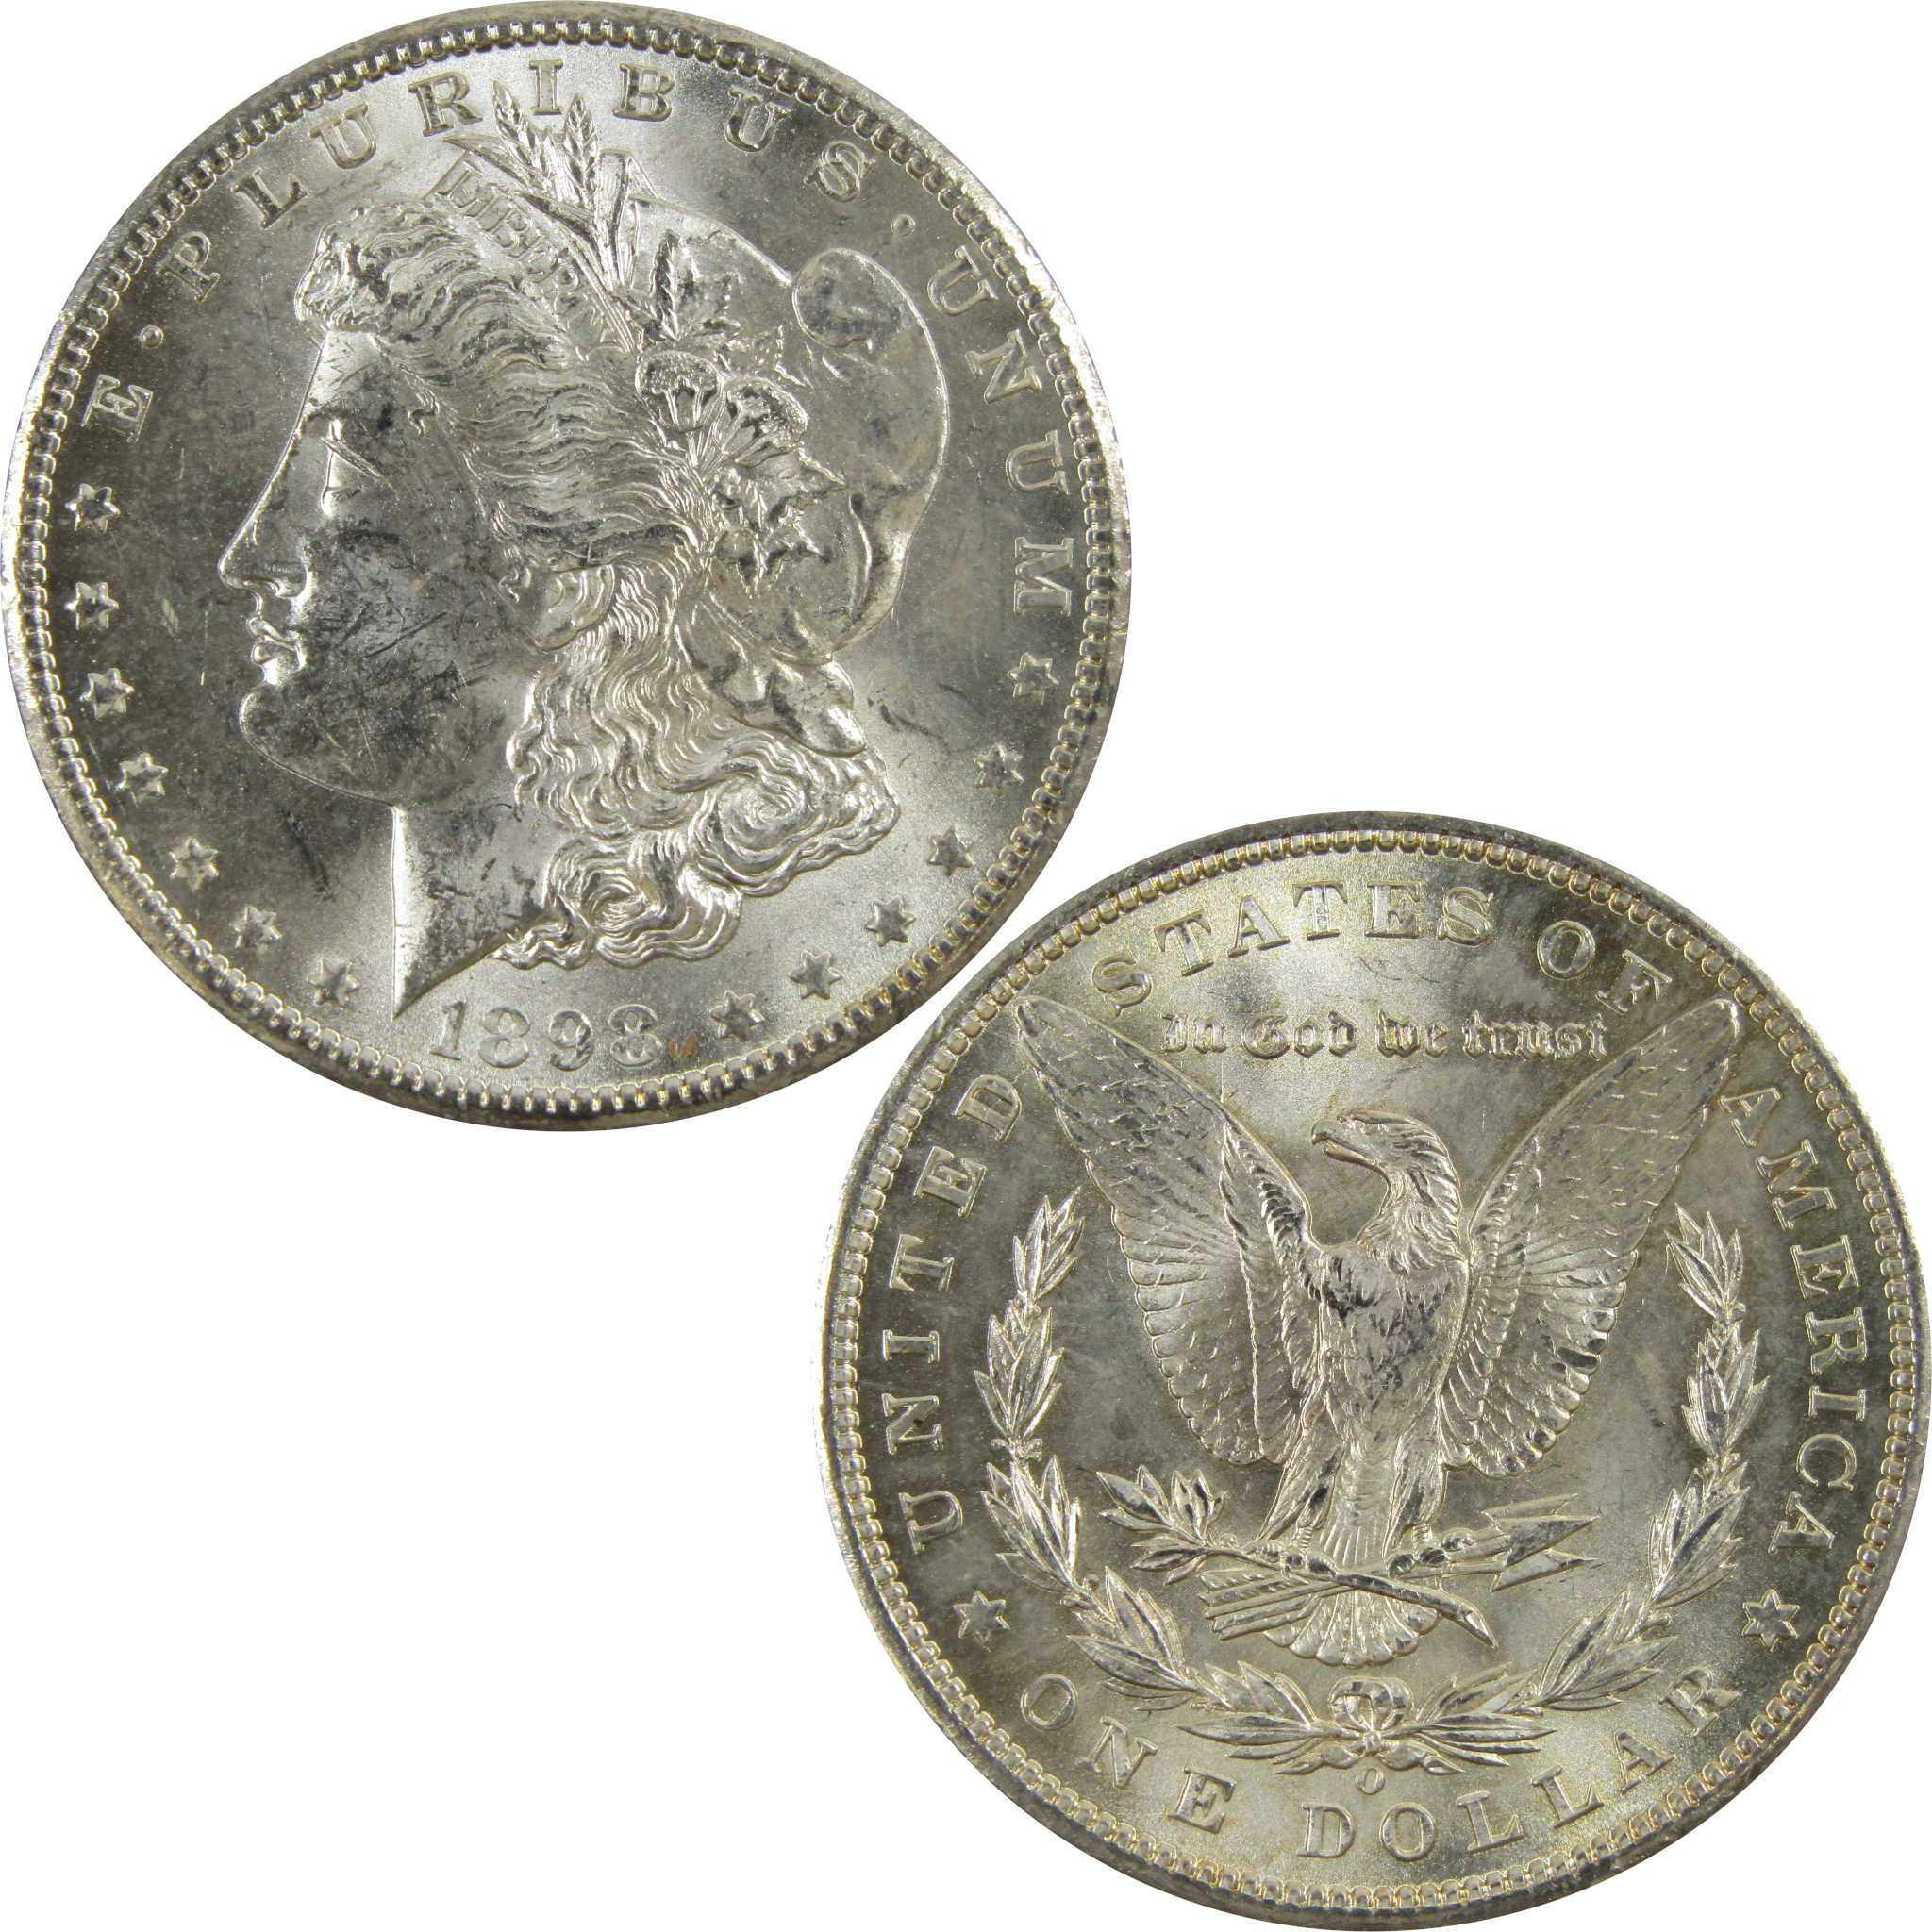 1898 O Morgan Dollar BU Uncirculated 90% Silver $1 Coin SKU:I5224 - Morgan coin - Morgan silver dollar - Morgan silver dollar for sale - Profile Coins &amp; Collectibles